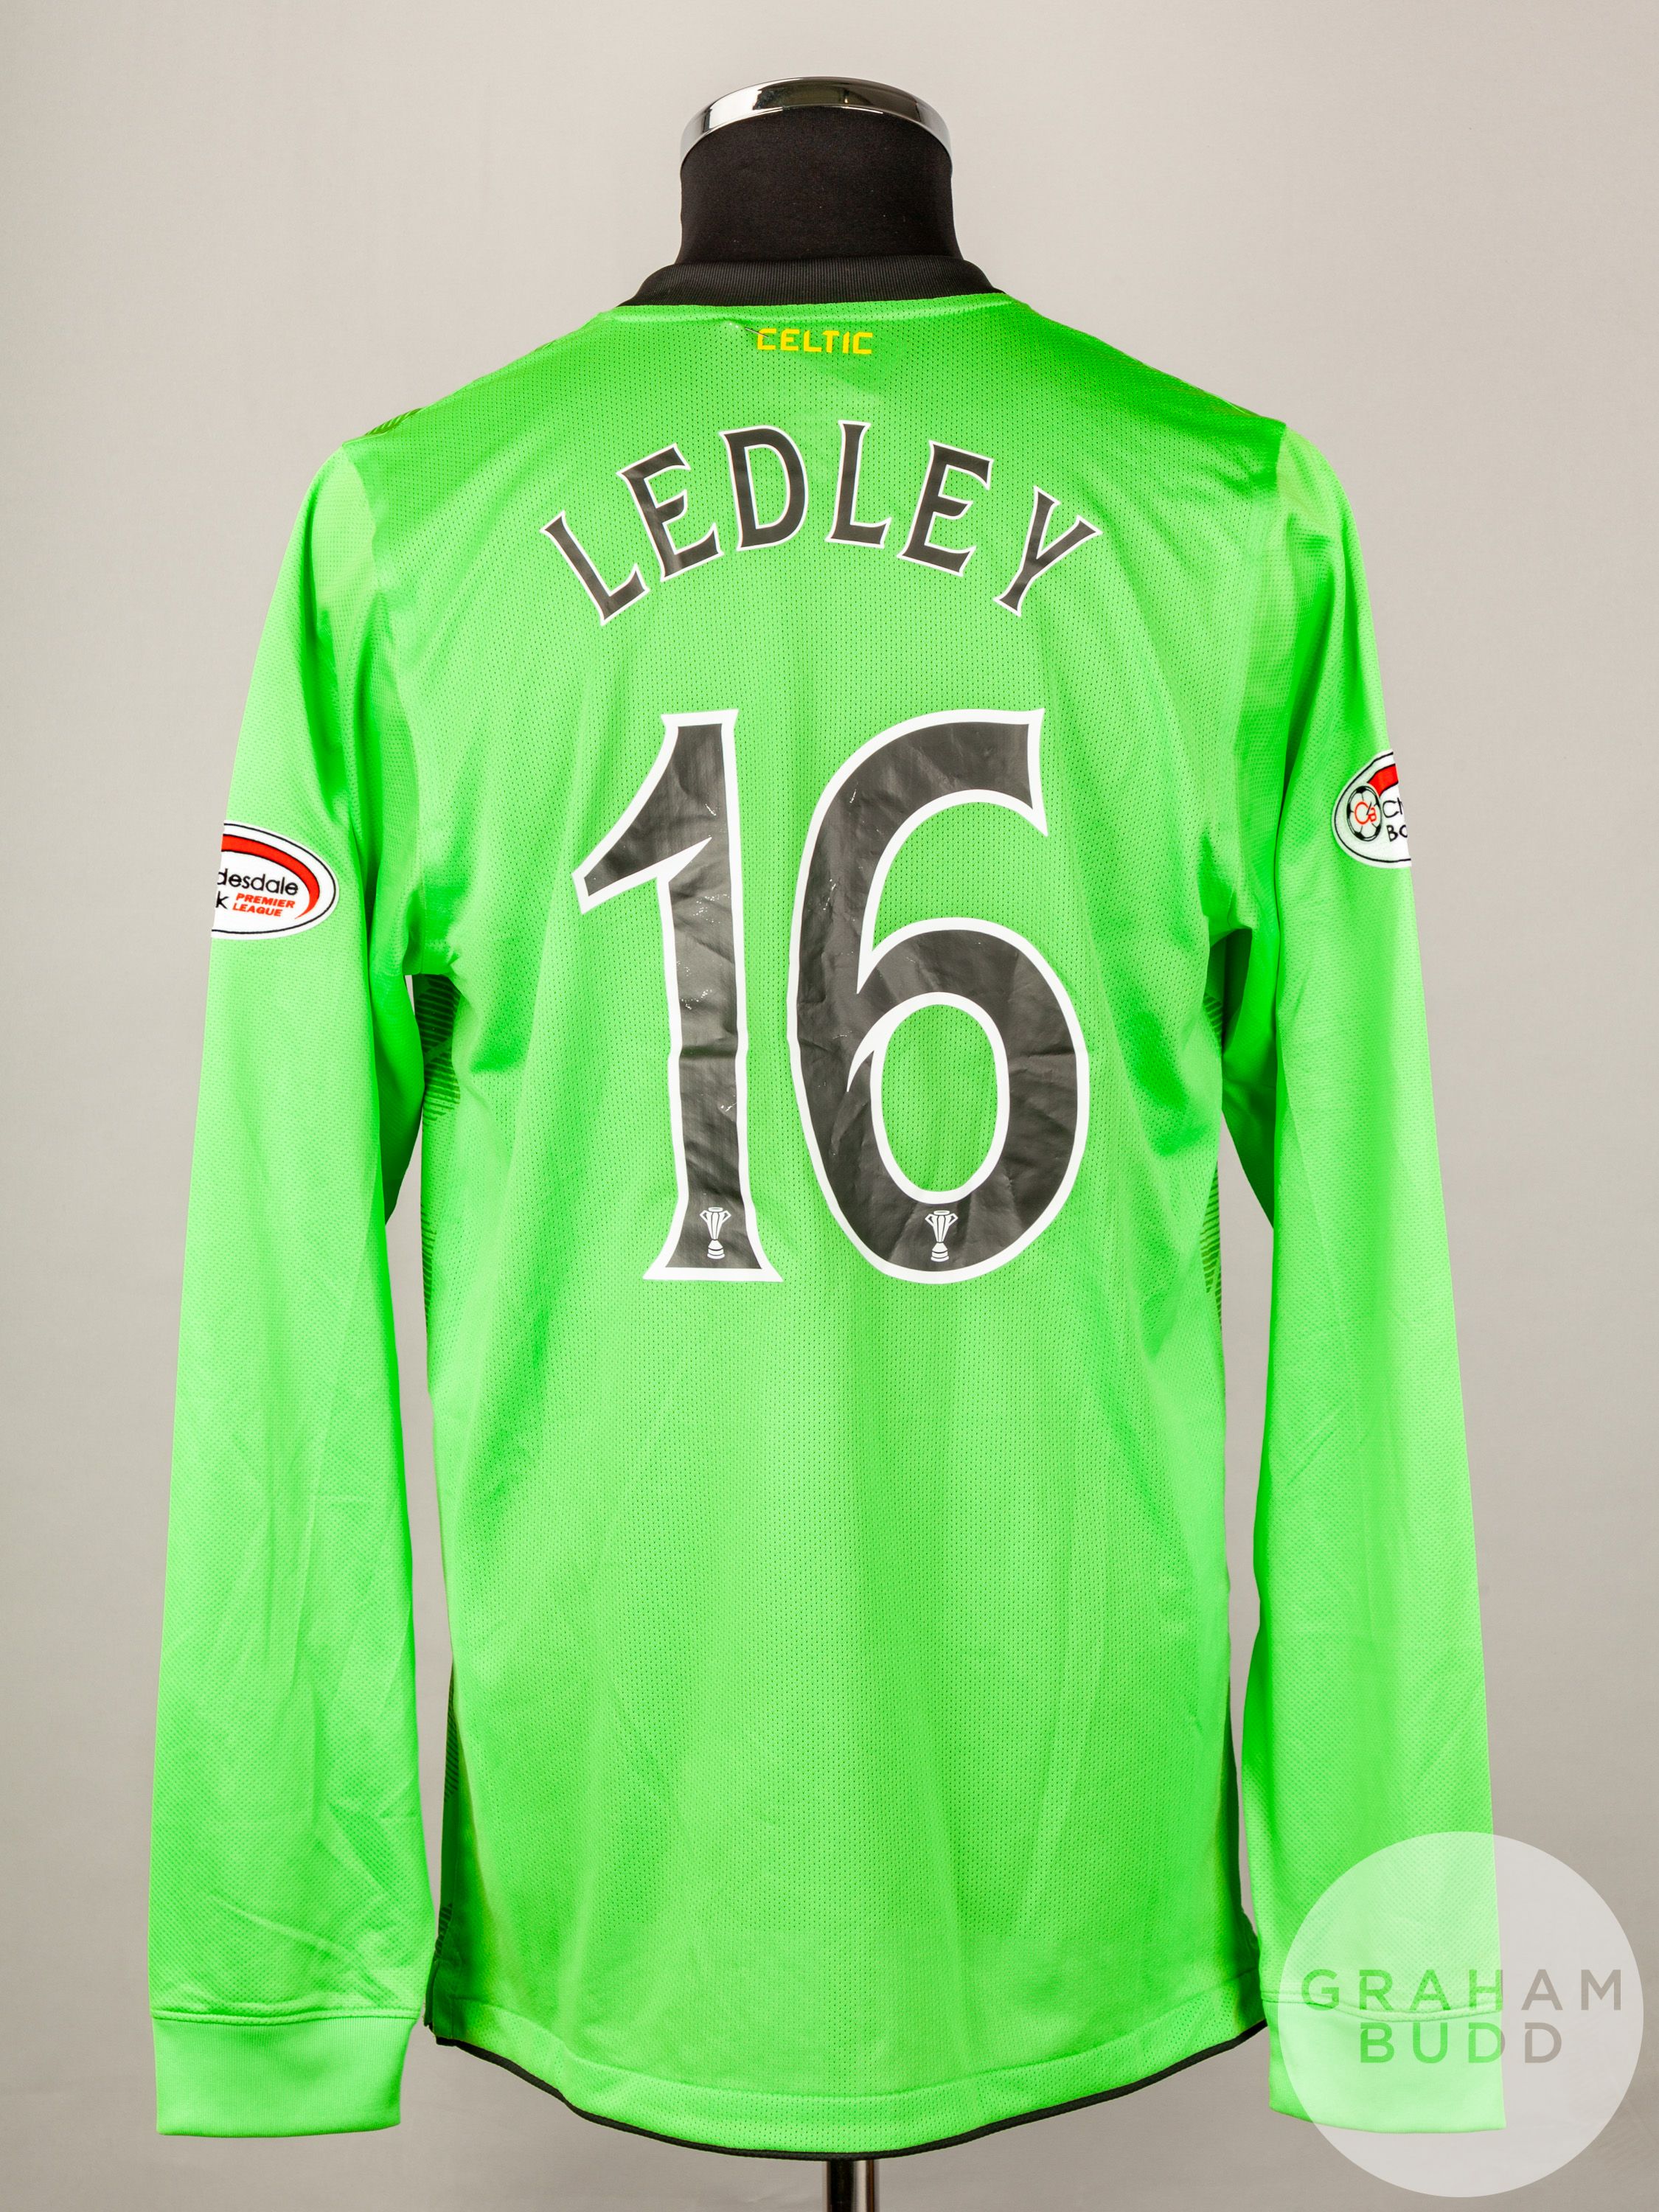 Joe Ledley green No.16 Celtic v. Kilmarnock long-sleeved shirt, 2010 - Image 2 of 5